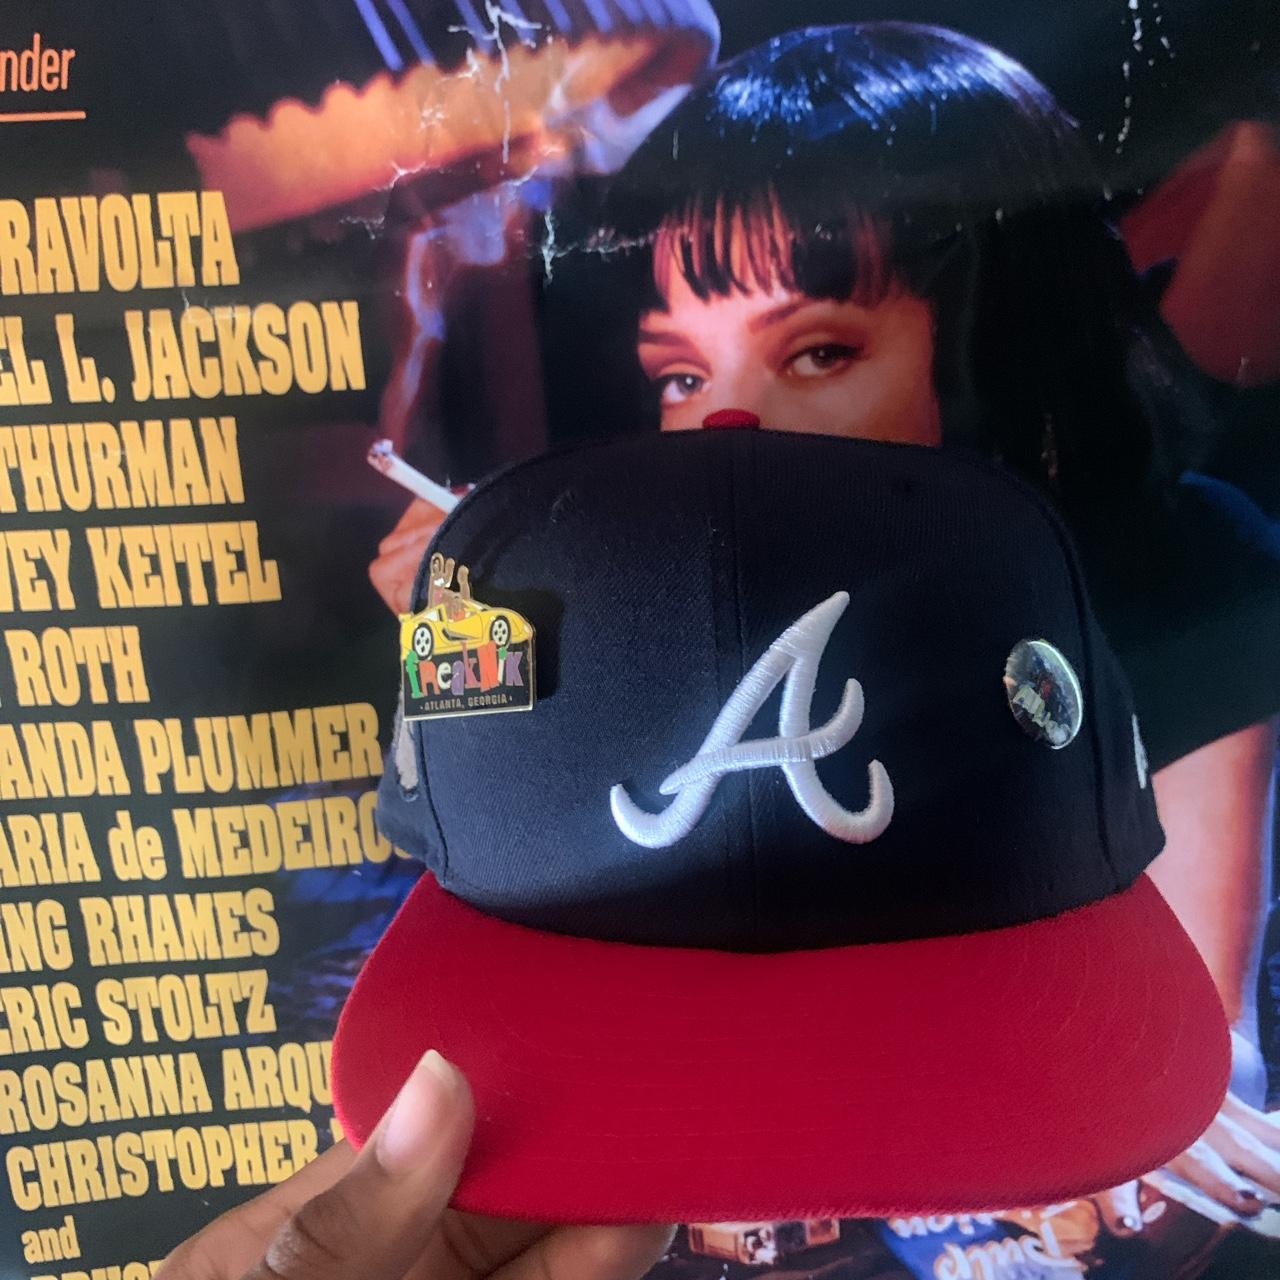 Vintage Atlanta Braves Hat. Cool Hat, in great - Depop